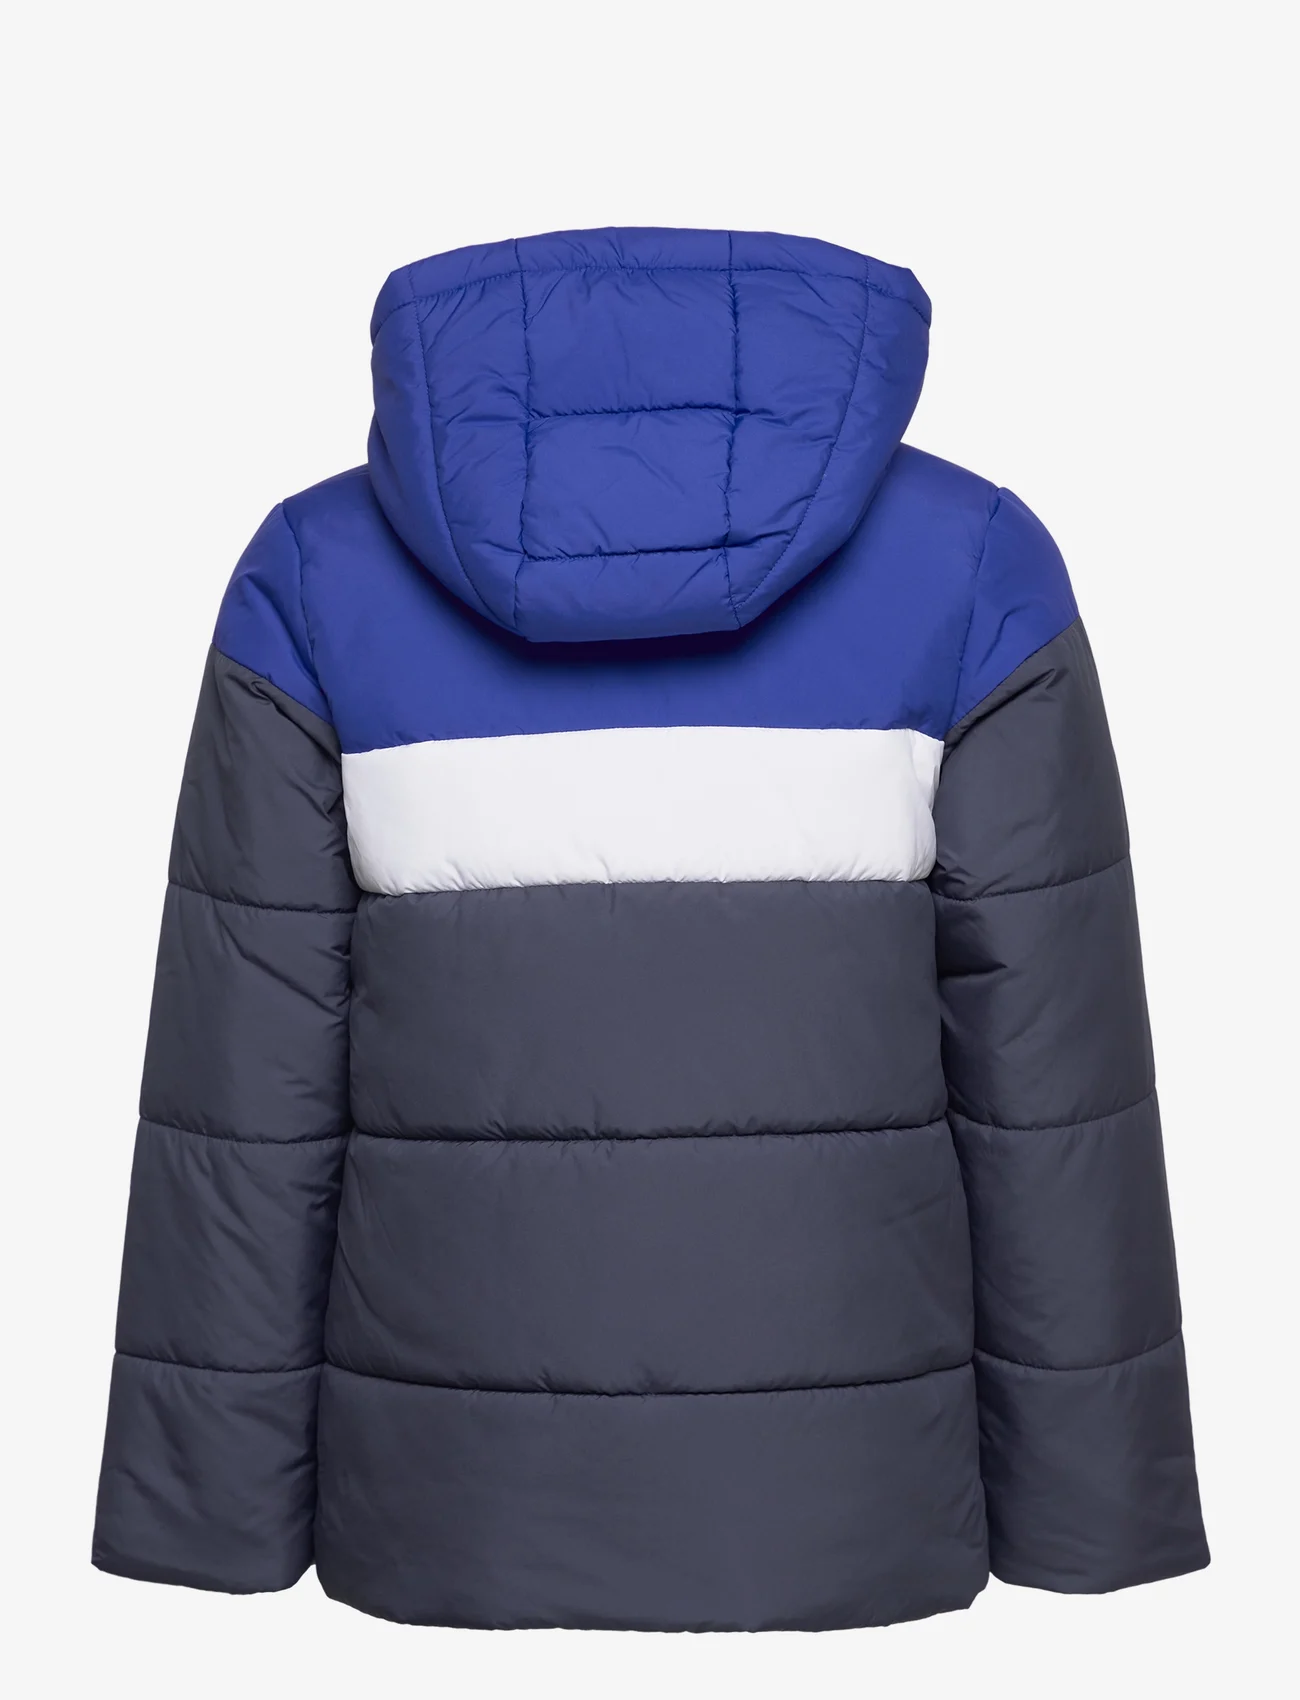 adidas Sportswear - Padded Jacket Kids - isolerede jakker - selubl - 1